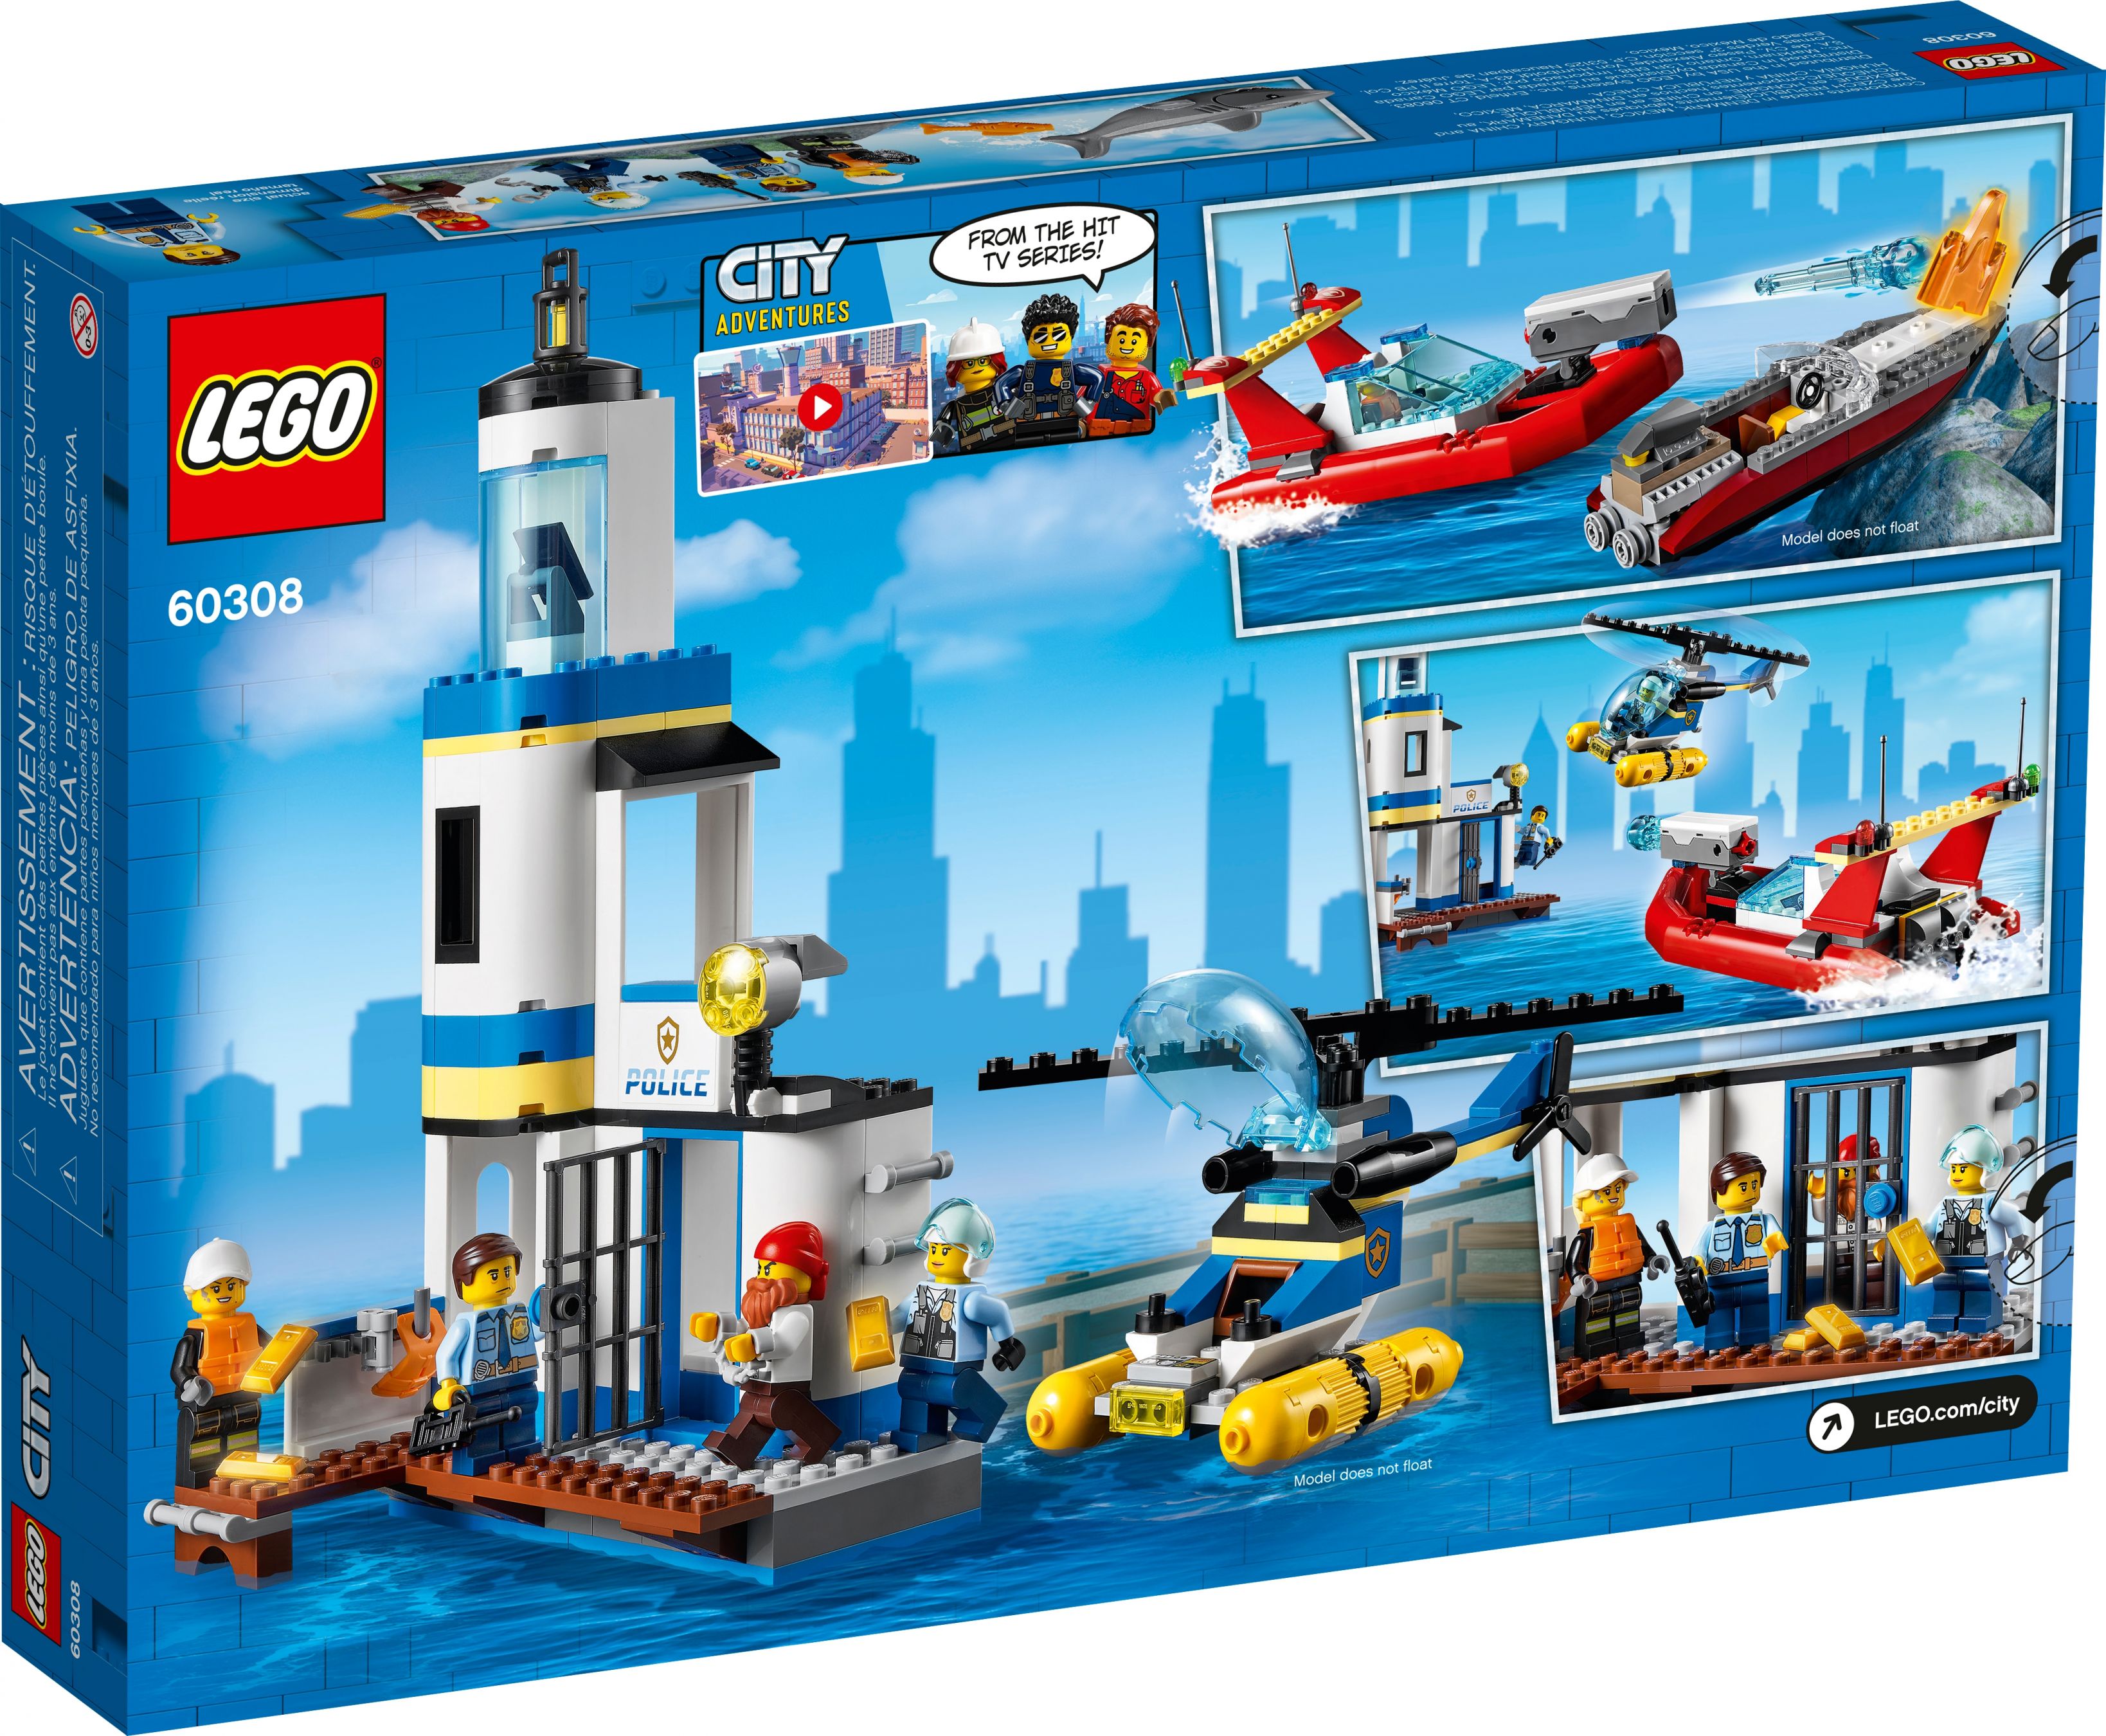 LEGO City 60308 Polizei und Feuerwehr im Küsteneinsatz LEGO_60308_alt7.jpg